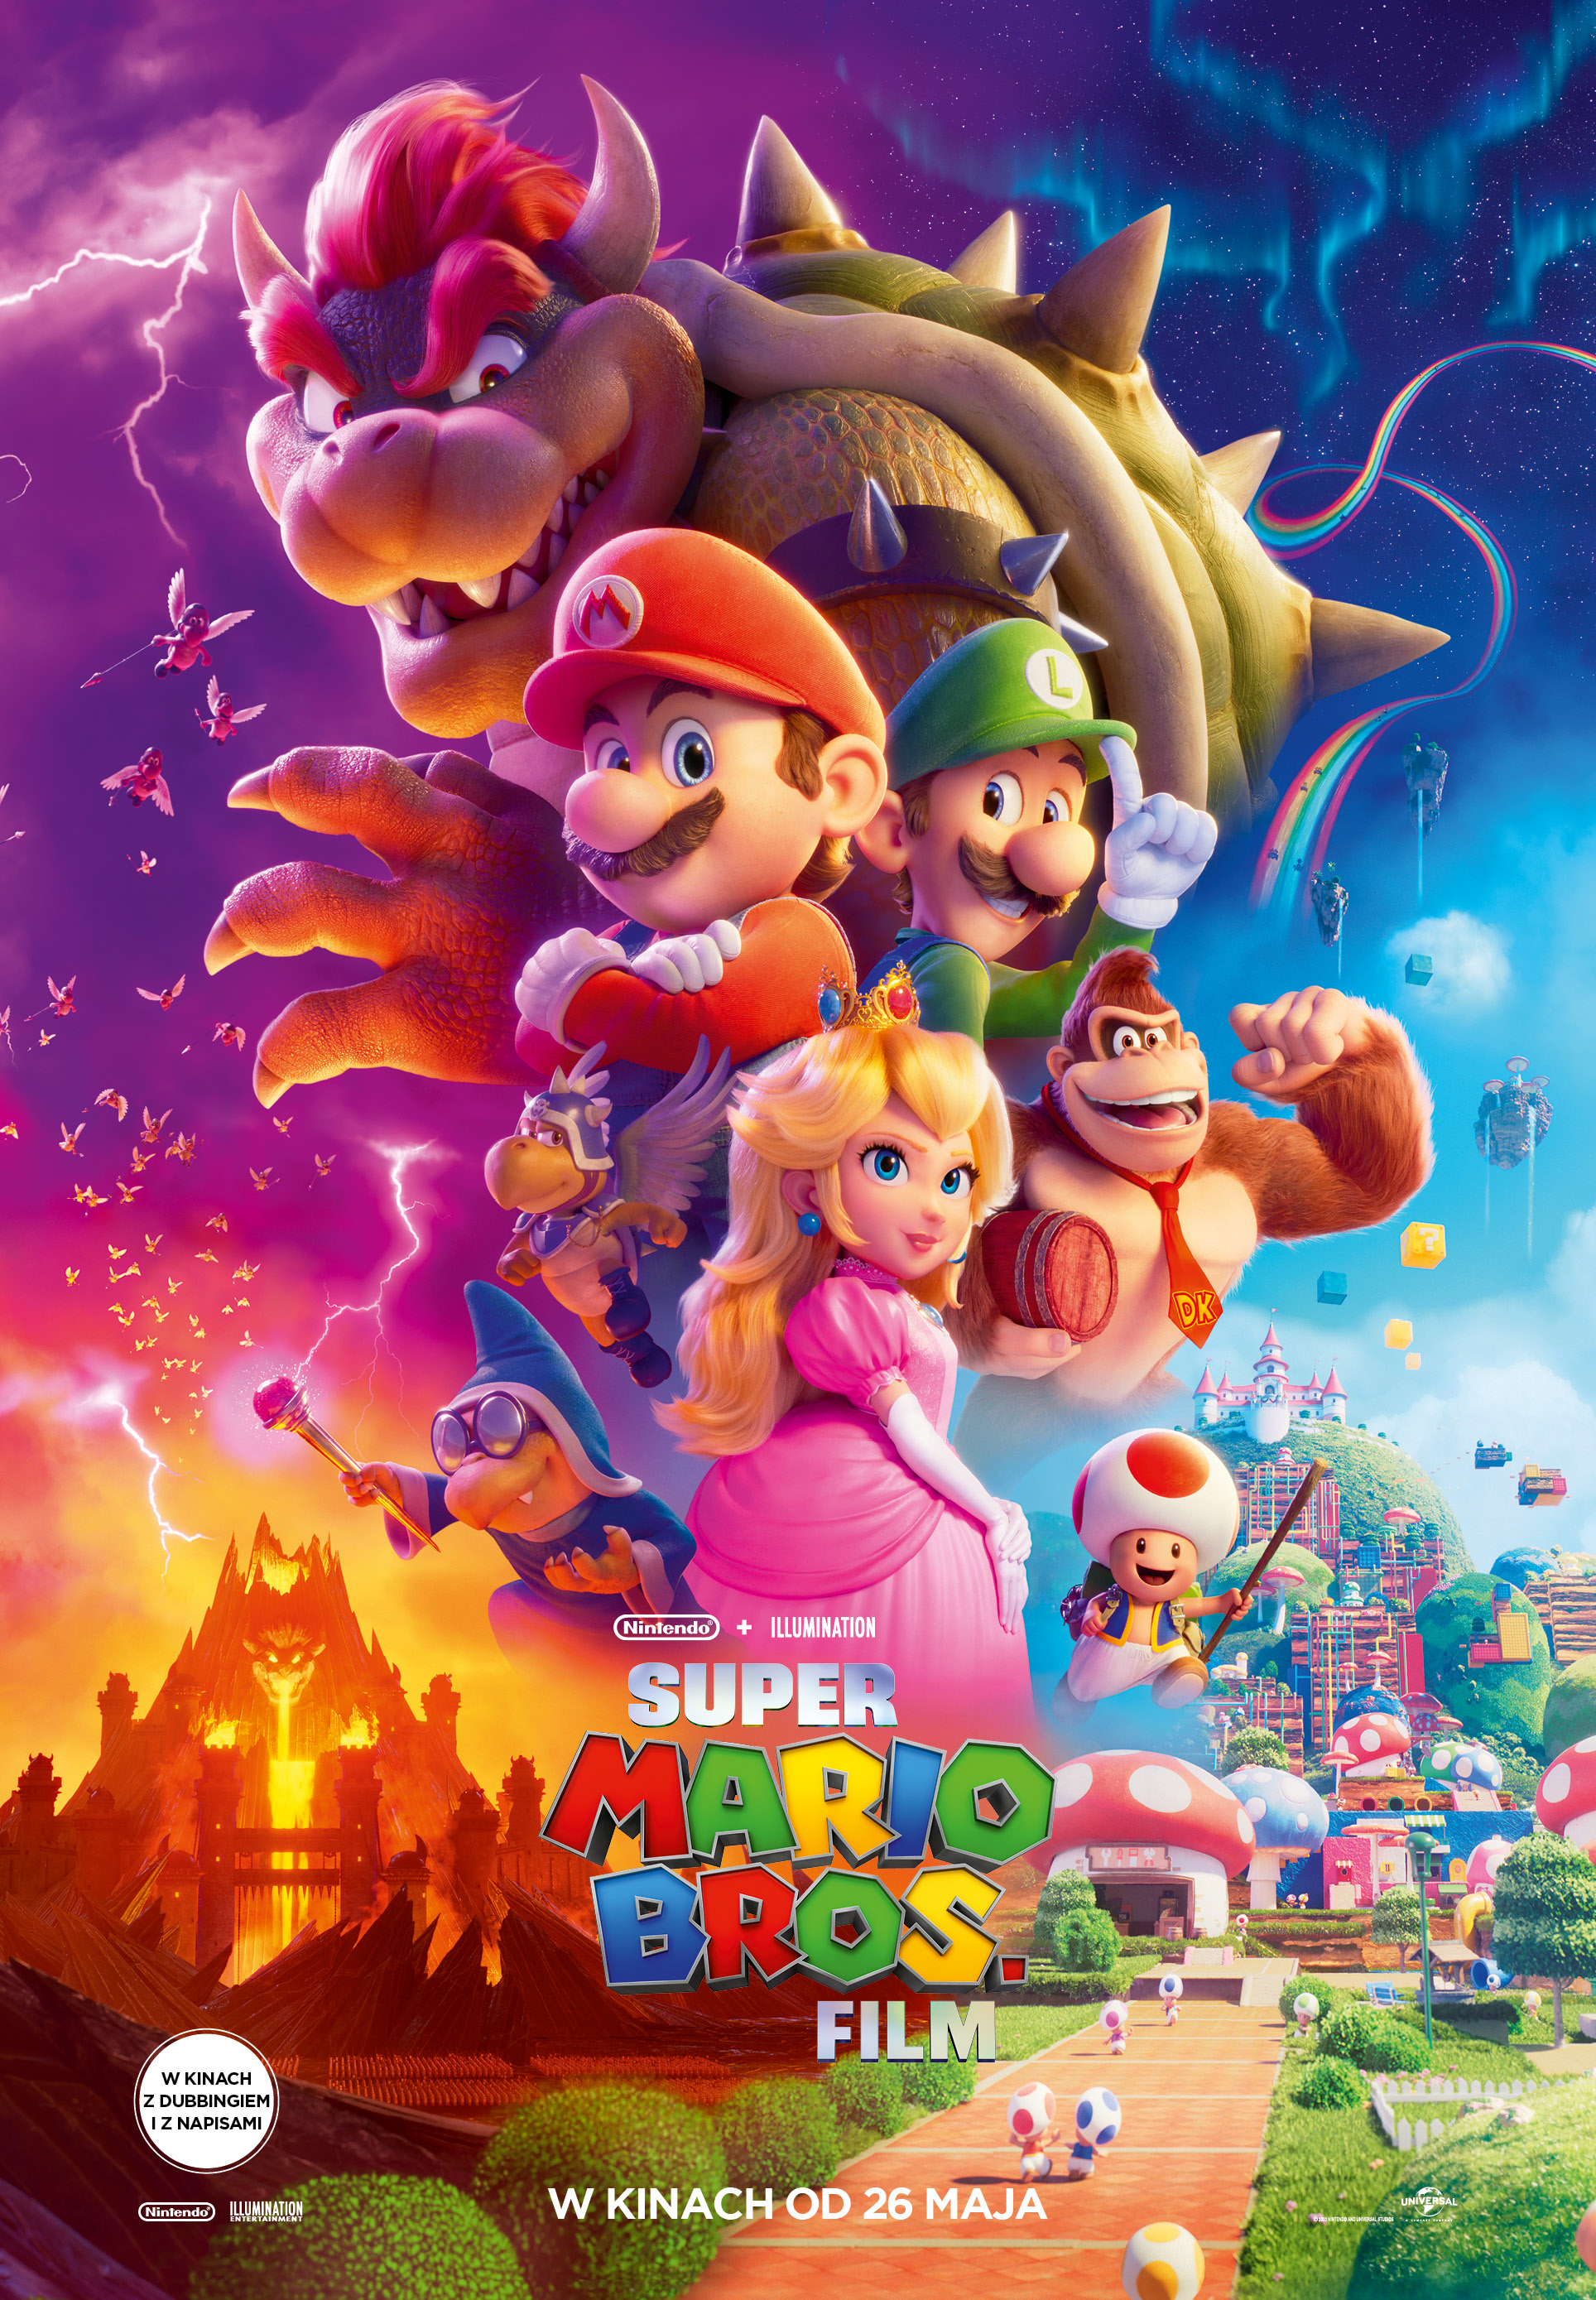 Plakat Super Mario Bros. Film 178372